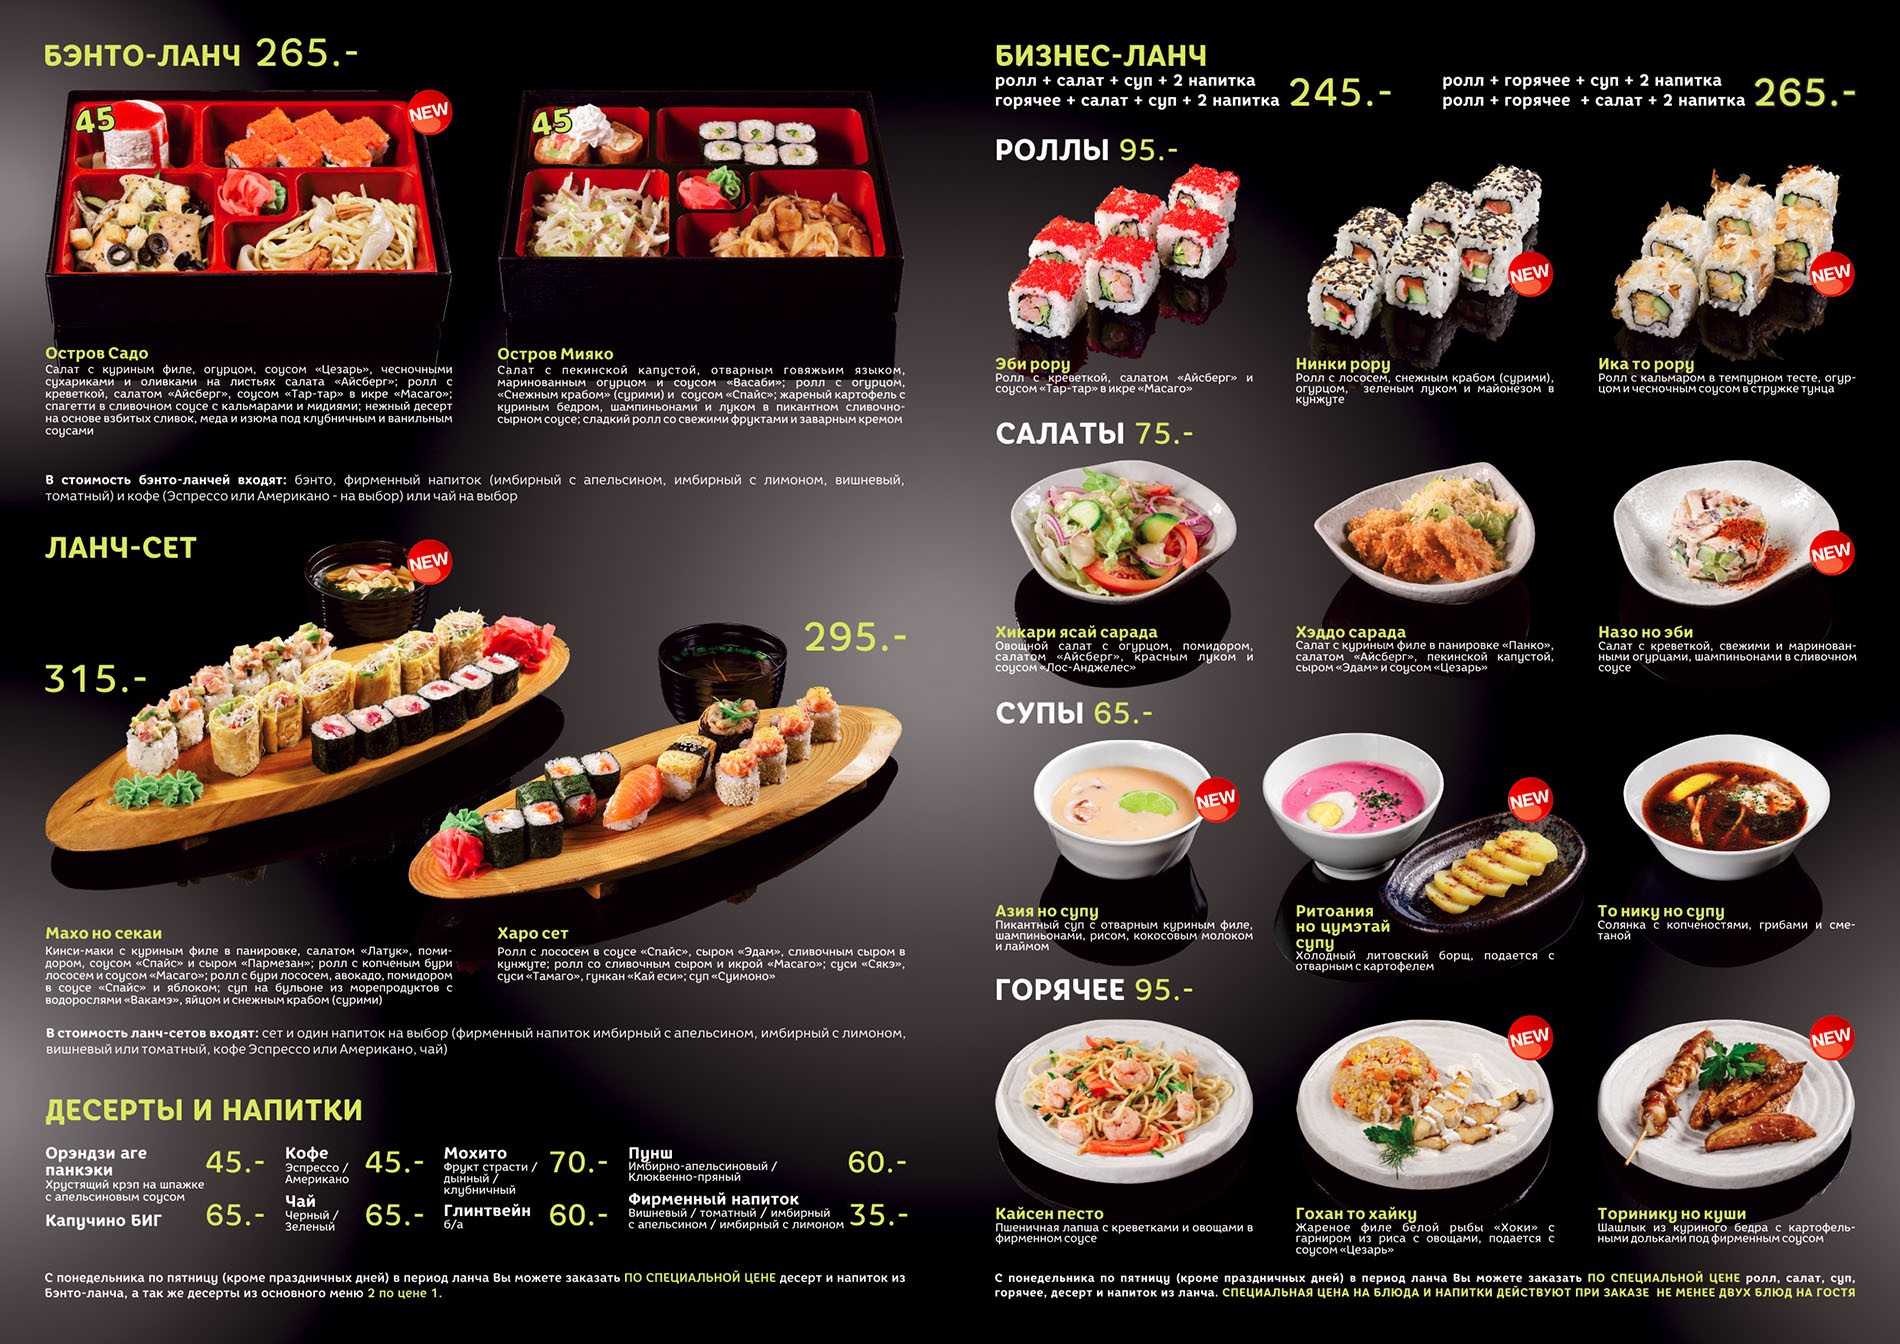 Бизнес ланч суши бар фото 12